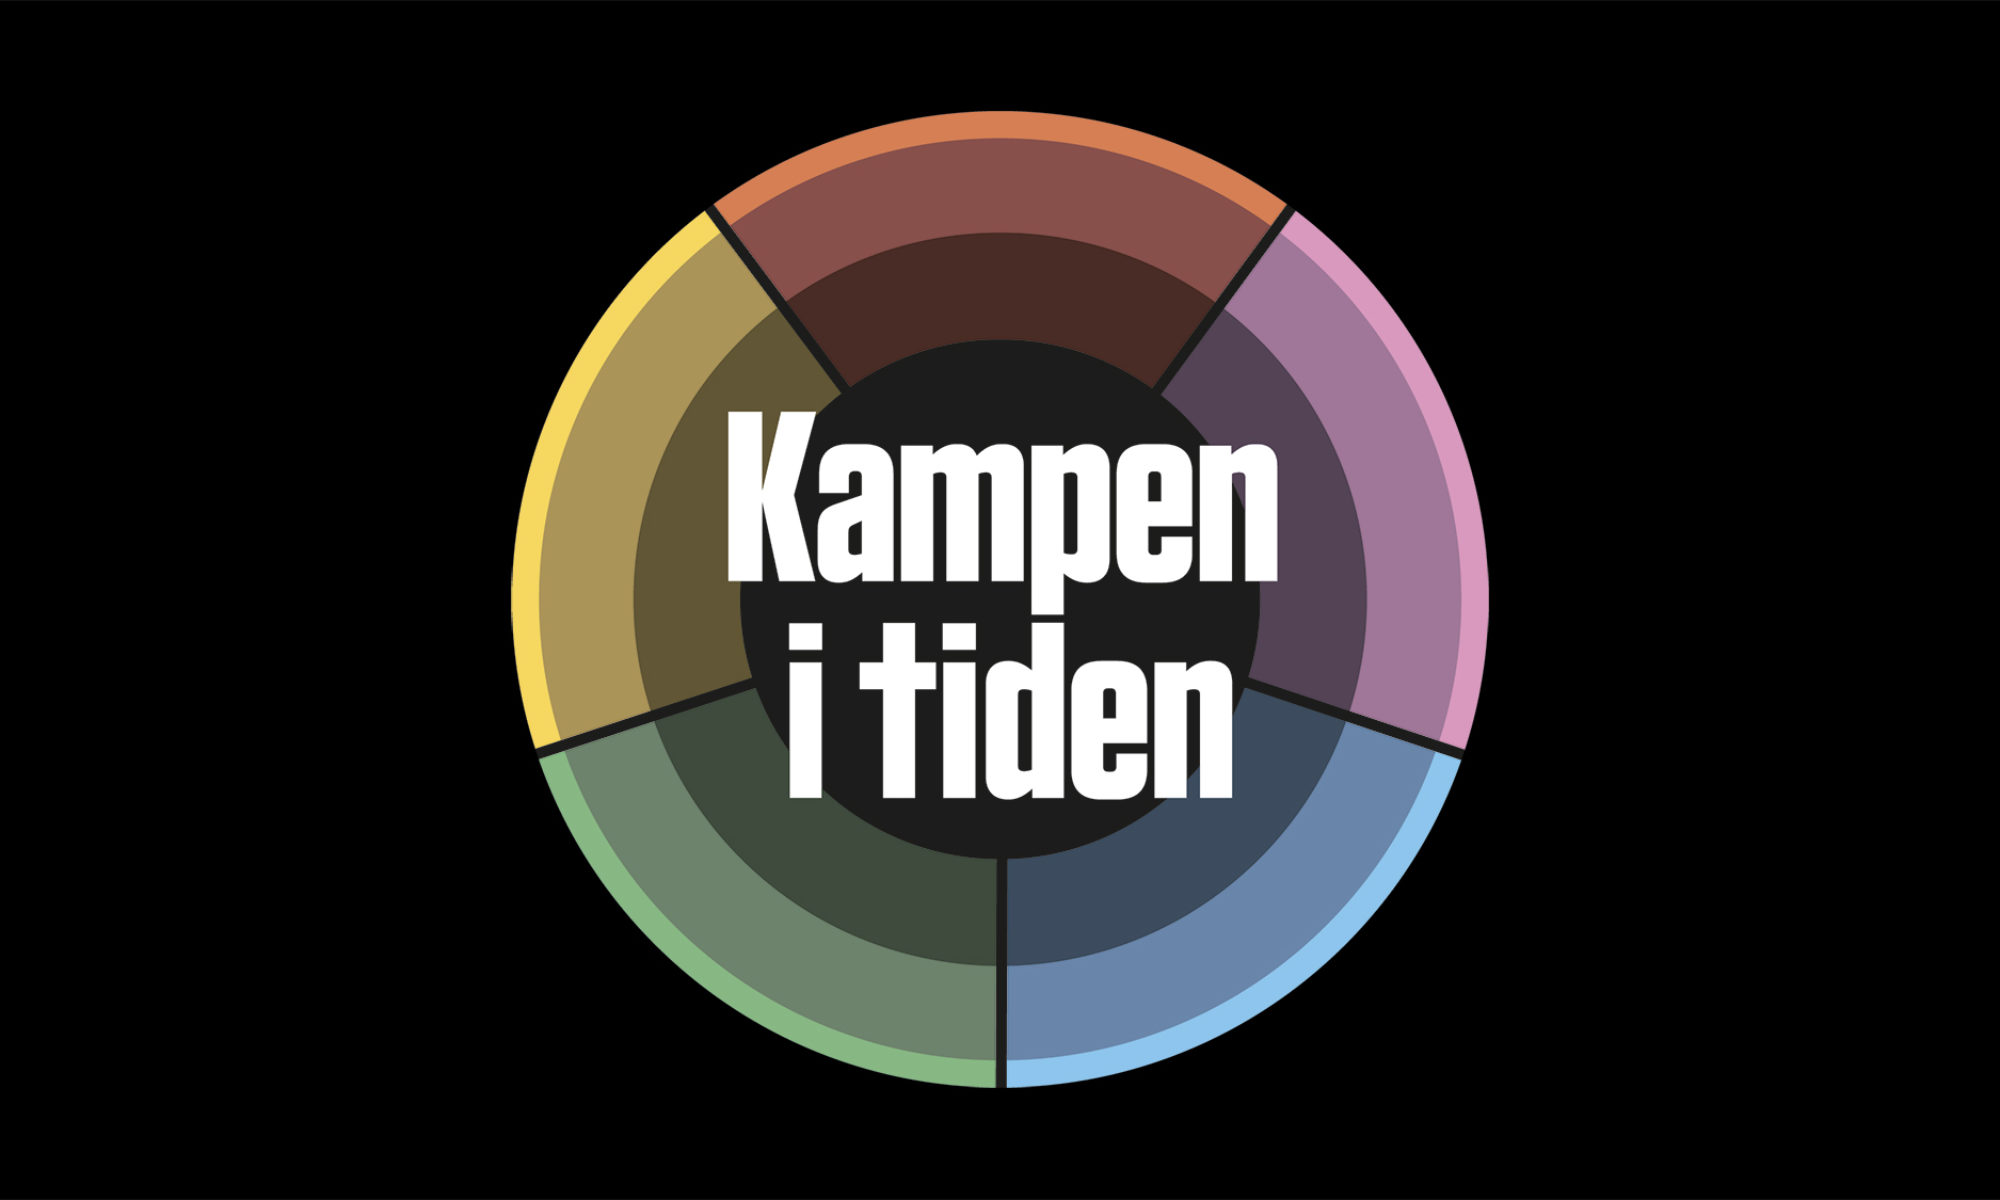 Logotyp bestående av färghjul i rött, lila, blått, grönt och gult. I mitten står texten 